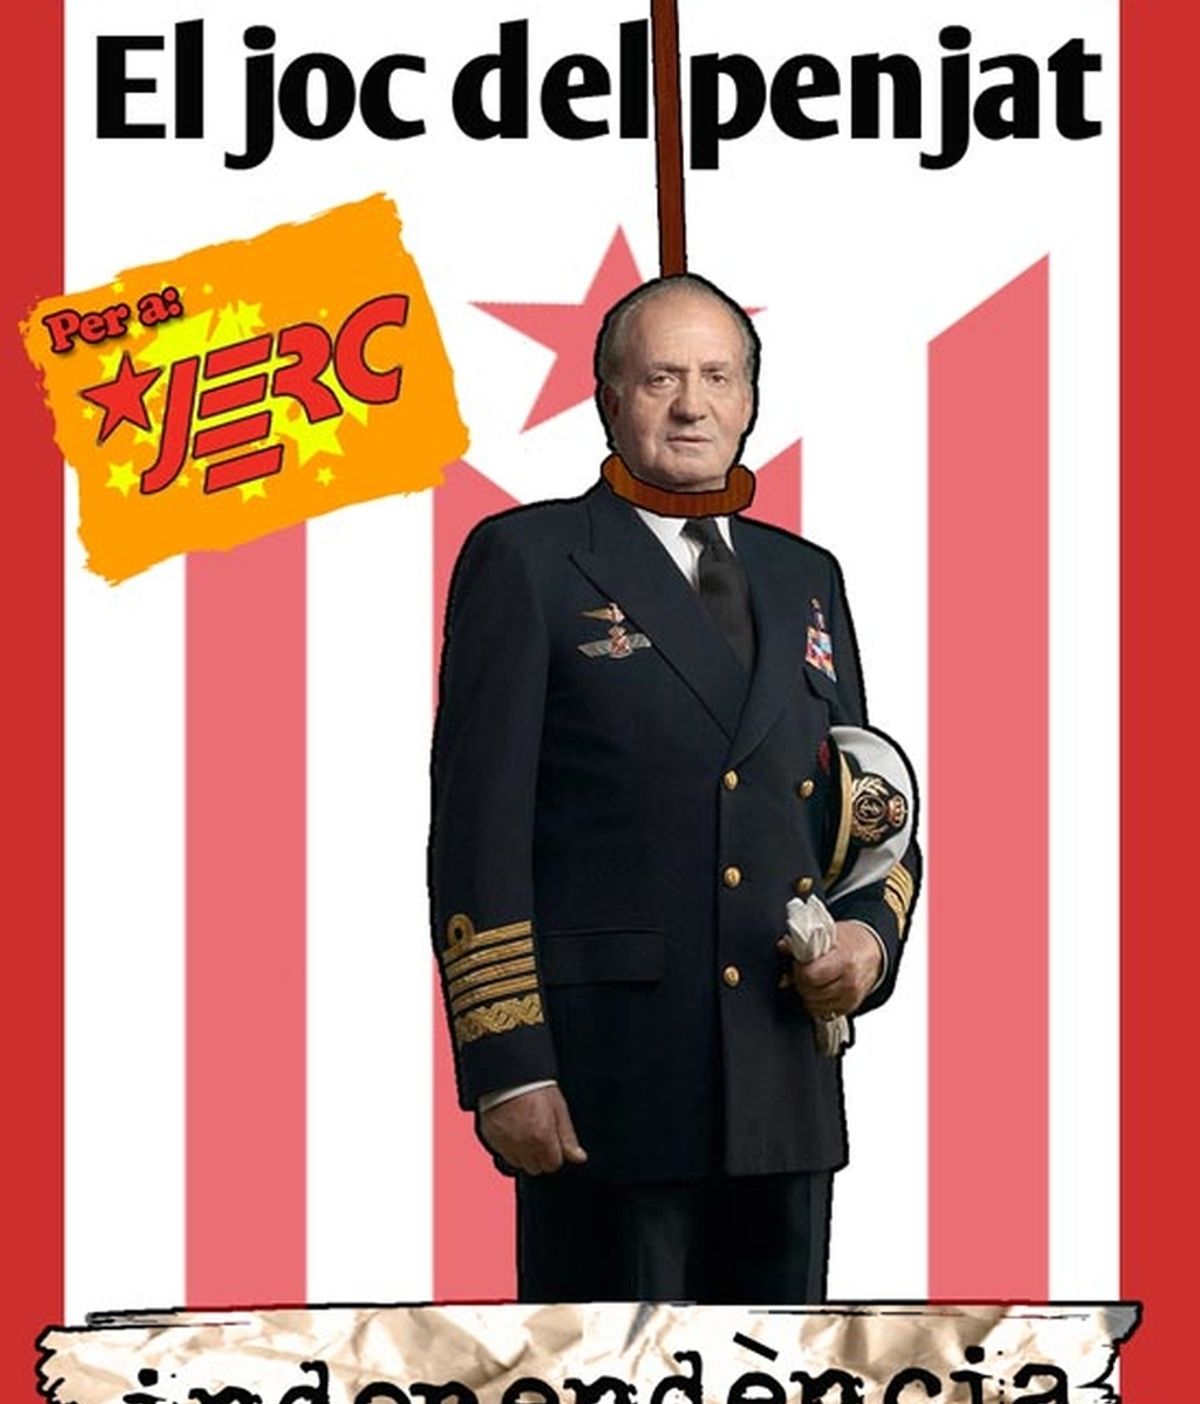 Una de las postales muestra a Don Juan Carlos como protagonista del "Juego del ahorcado" Foto: JERC